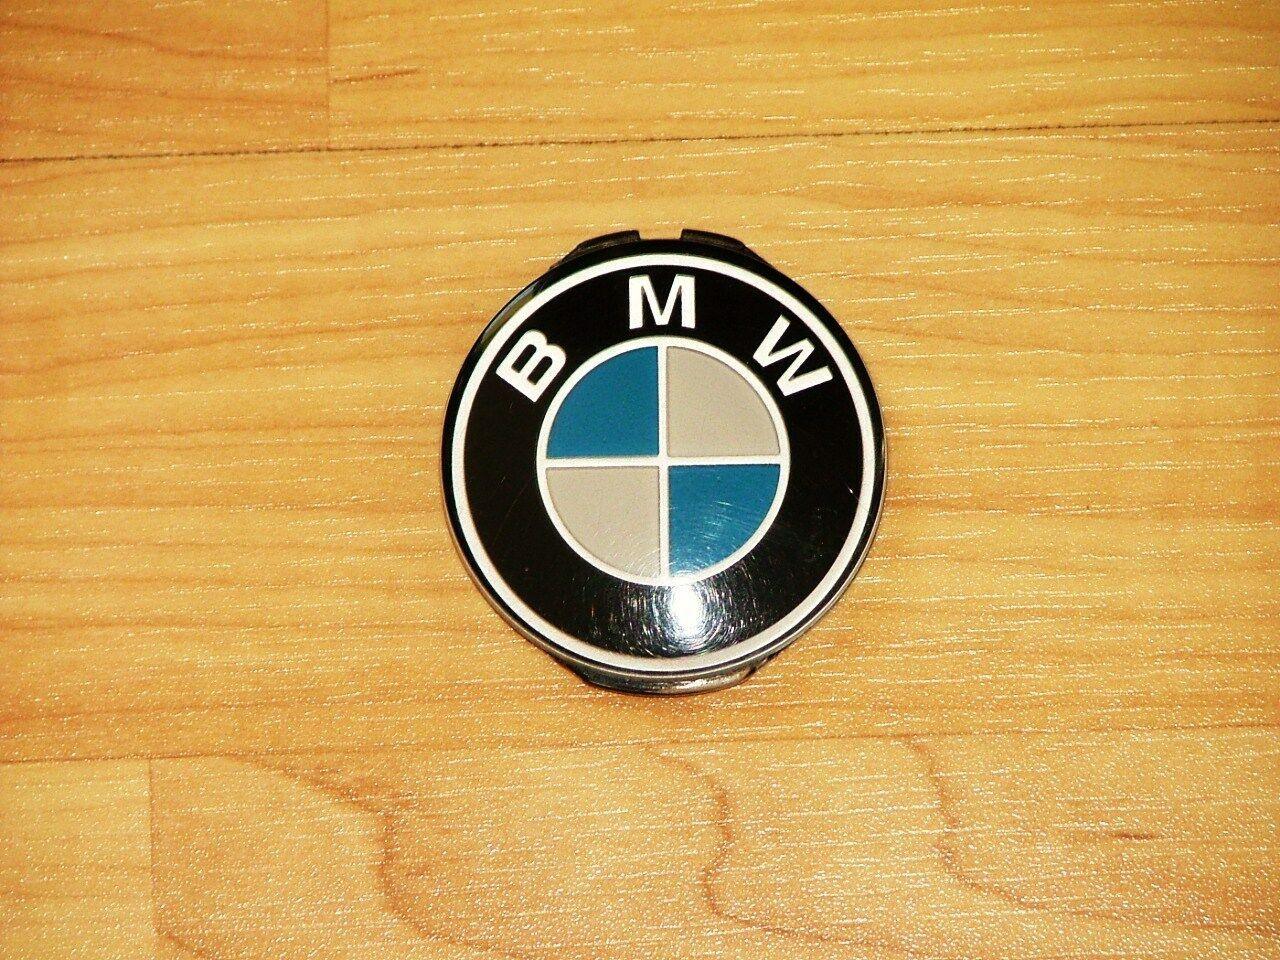 1986 BMW 325 Horn Pad Emblem-Badge


1987 BMW 325 Horn Pad Emblem-Badge

1988 BMW 325 Horn Pad Emblem-Badge